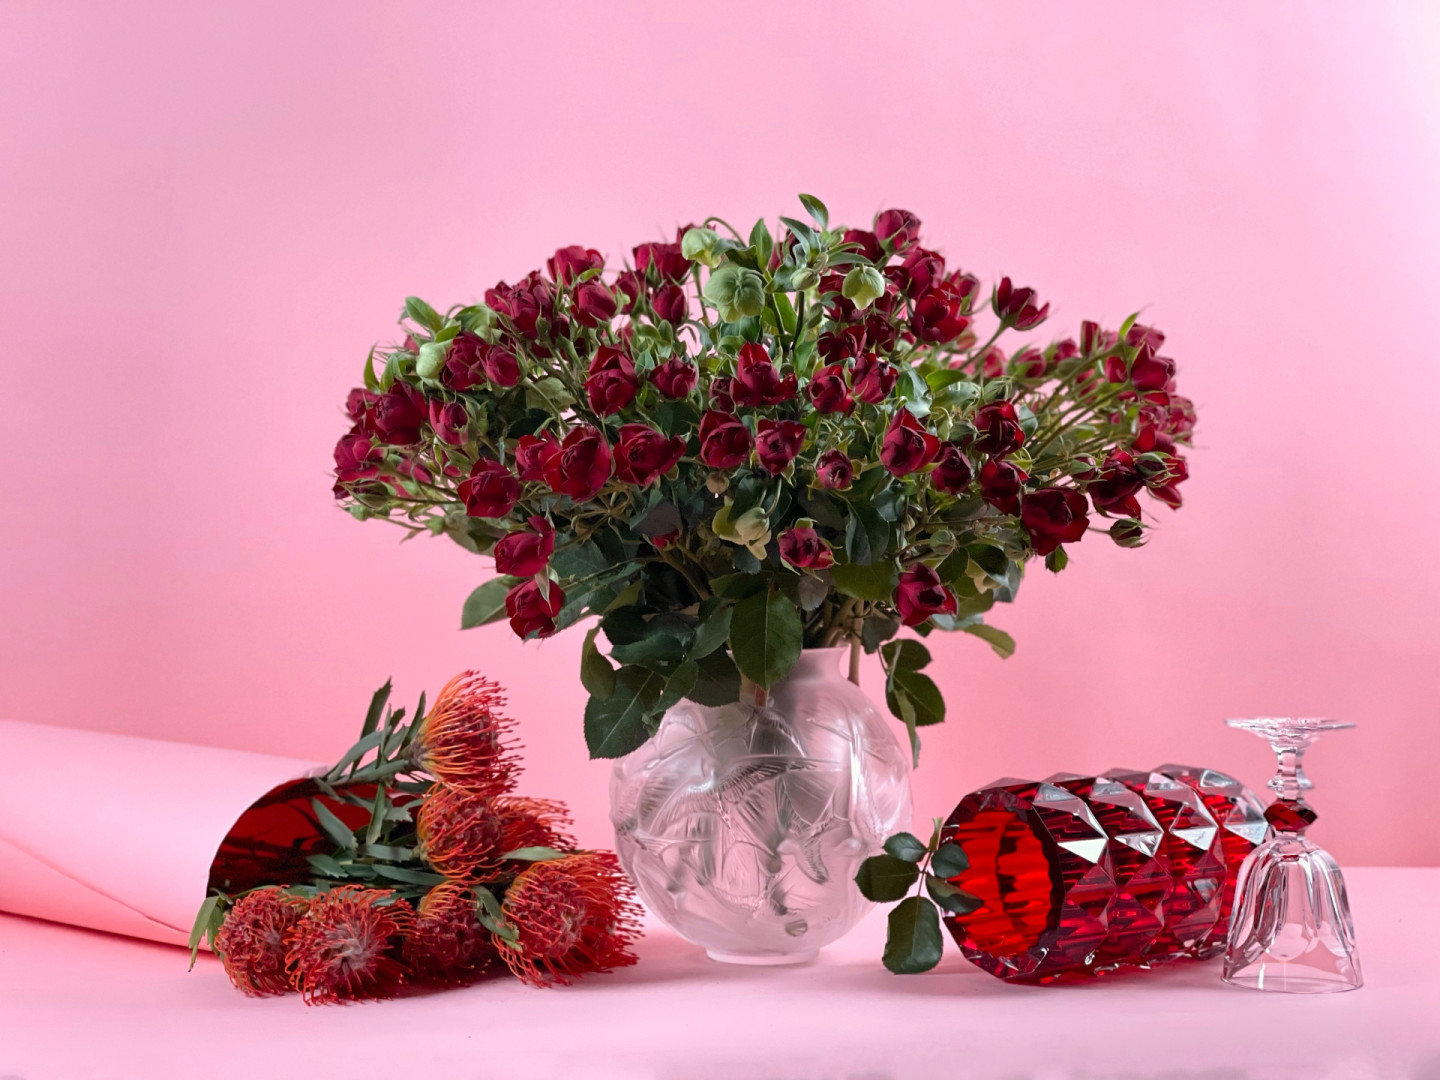 Ваза Hirondelles, Lalique, ЦУМ; ваза Louxor и фужер Louis Philippe — все Baccarat, ЦУМ: цветы — флористическая студия Amnesia